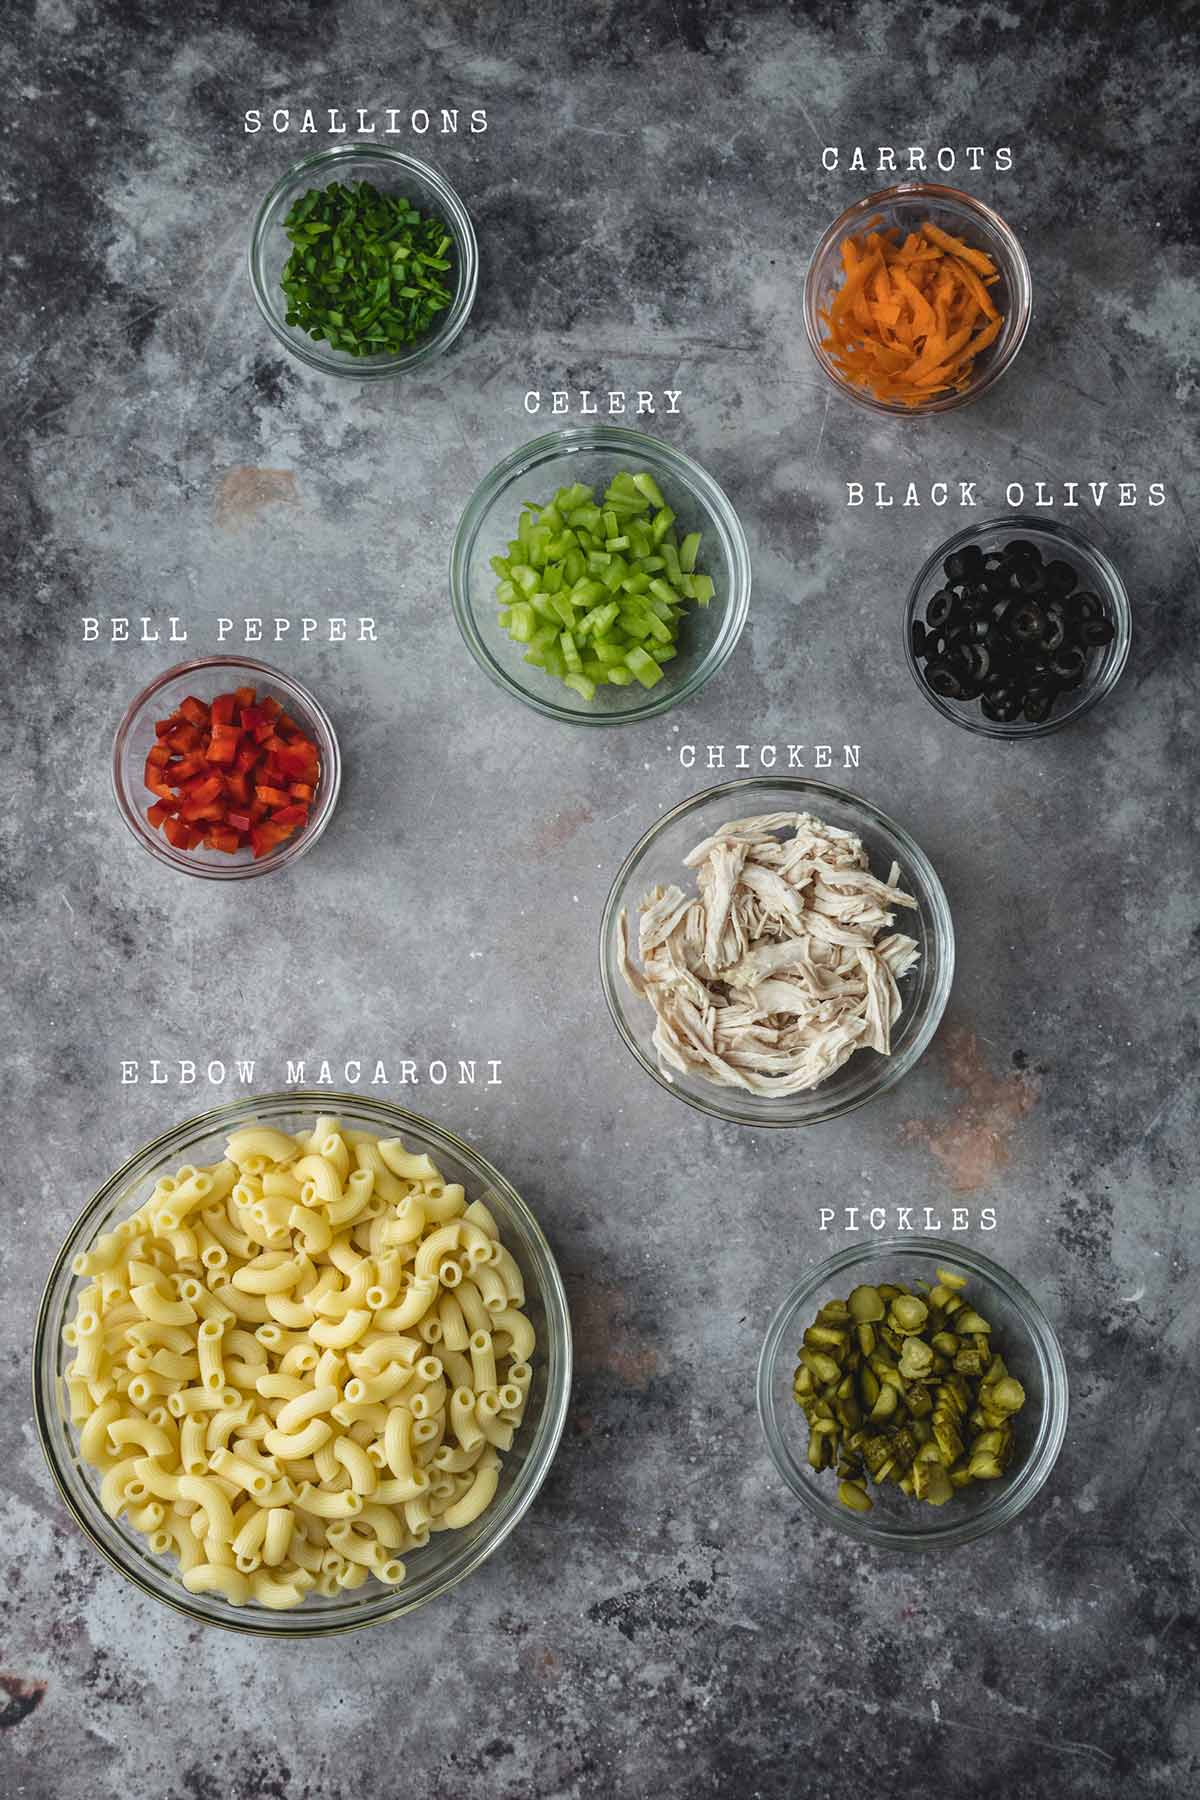 Ingredients of chicken macaroni salad

